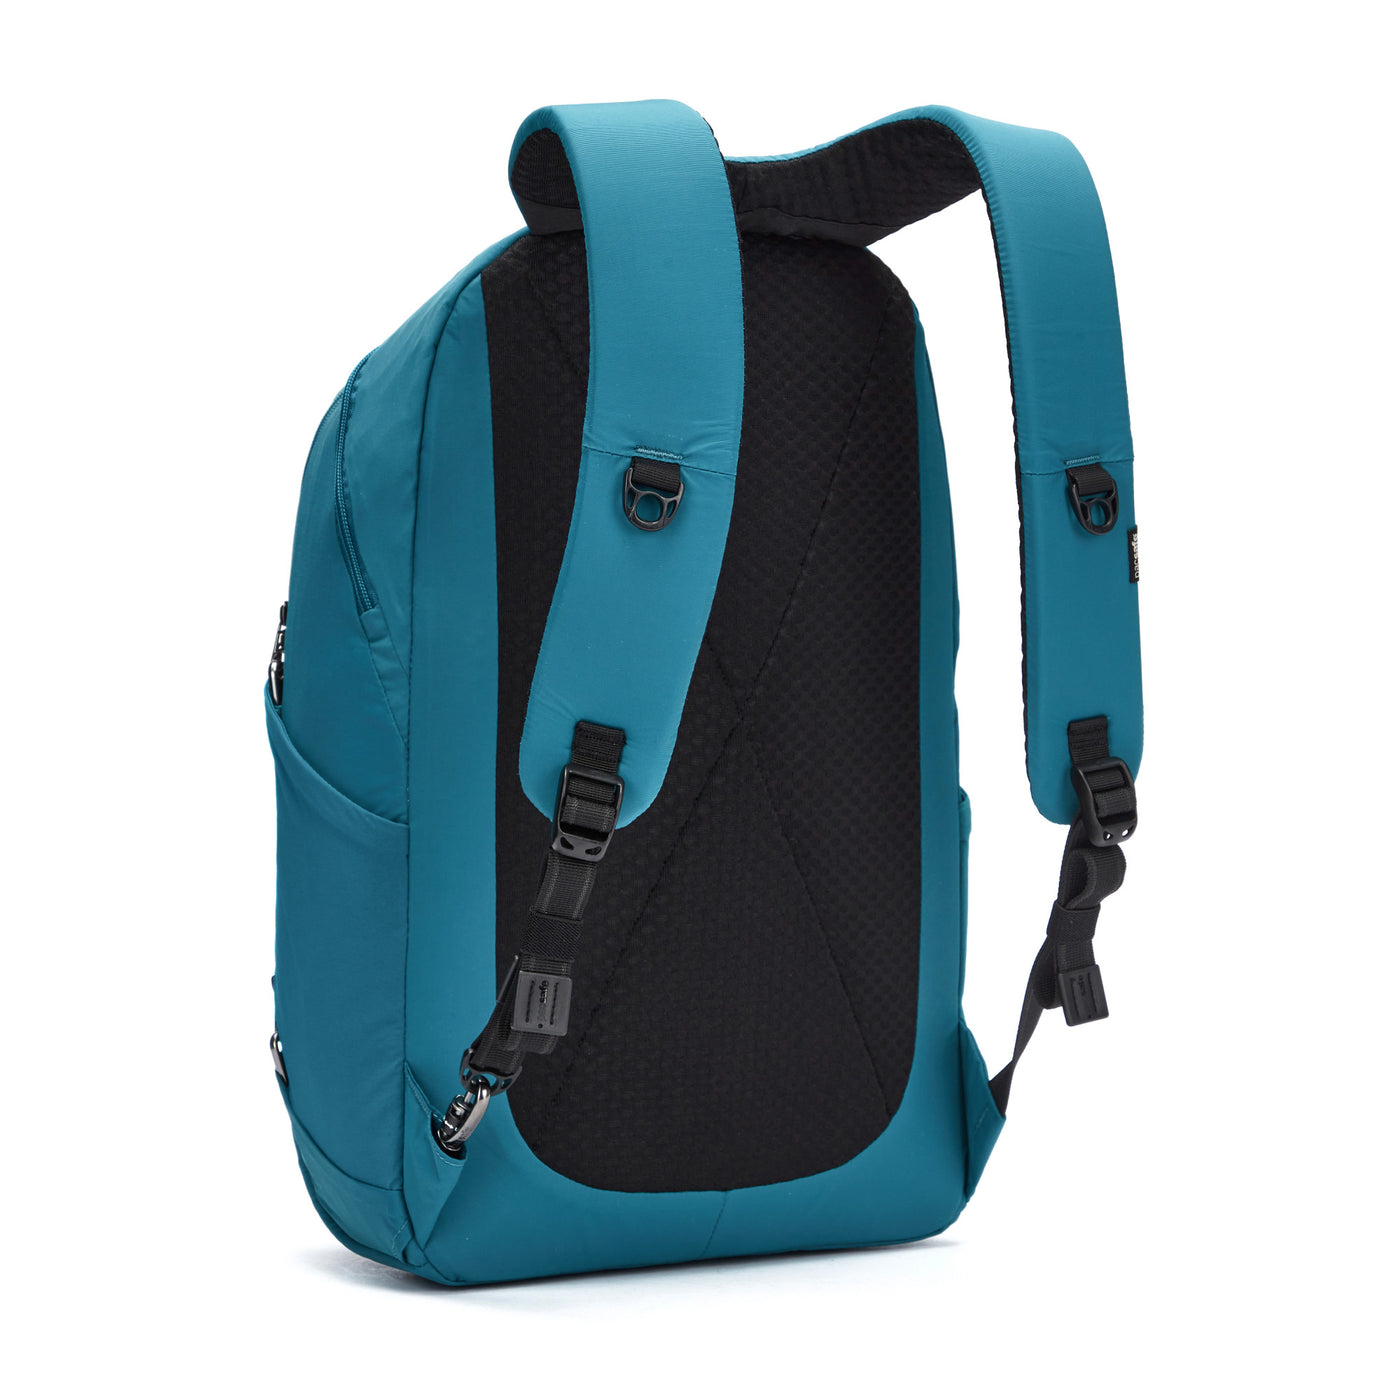 Metrosafe LS450 25L Backpack